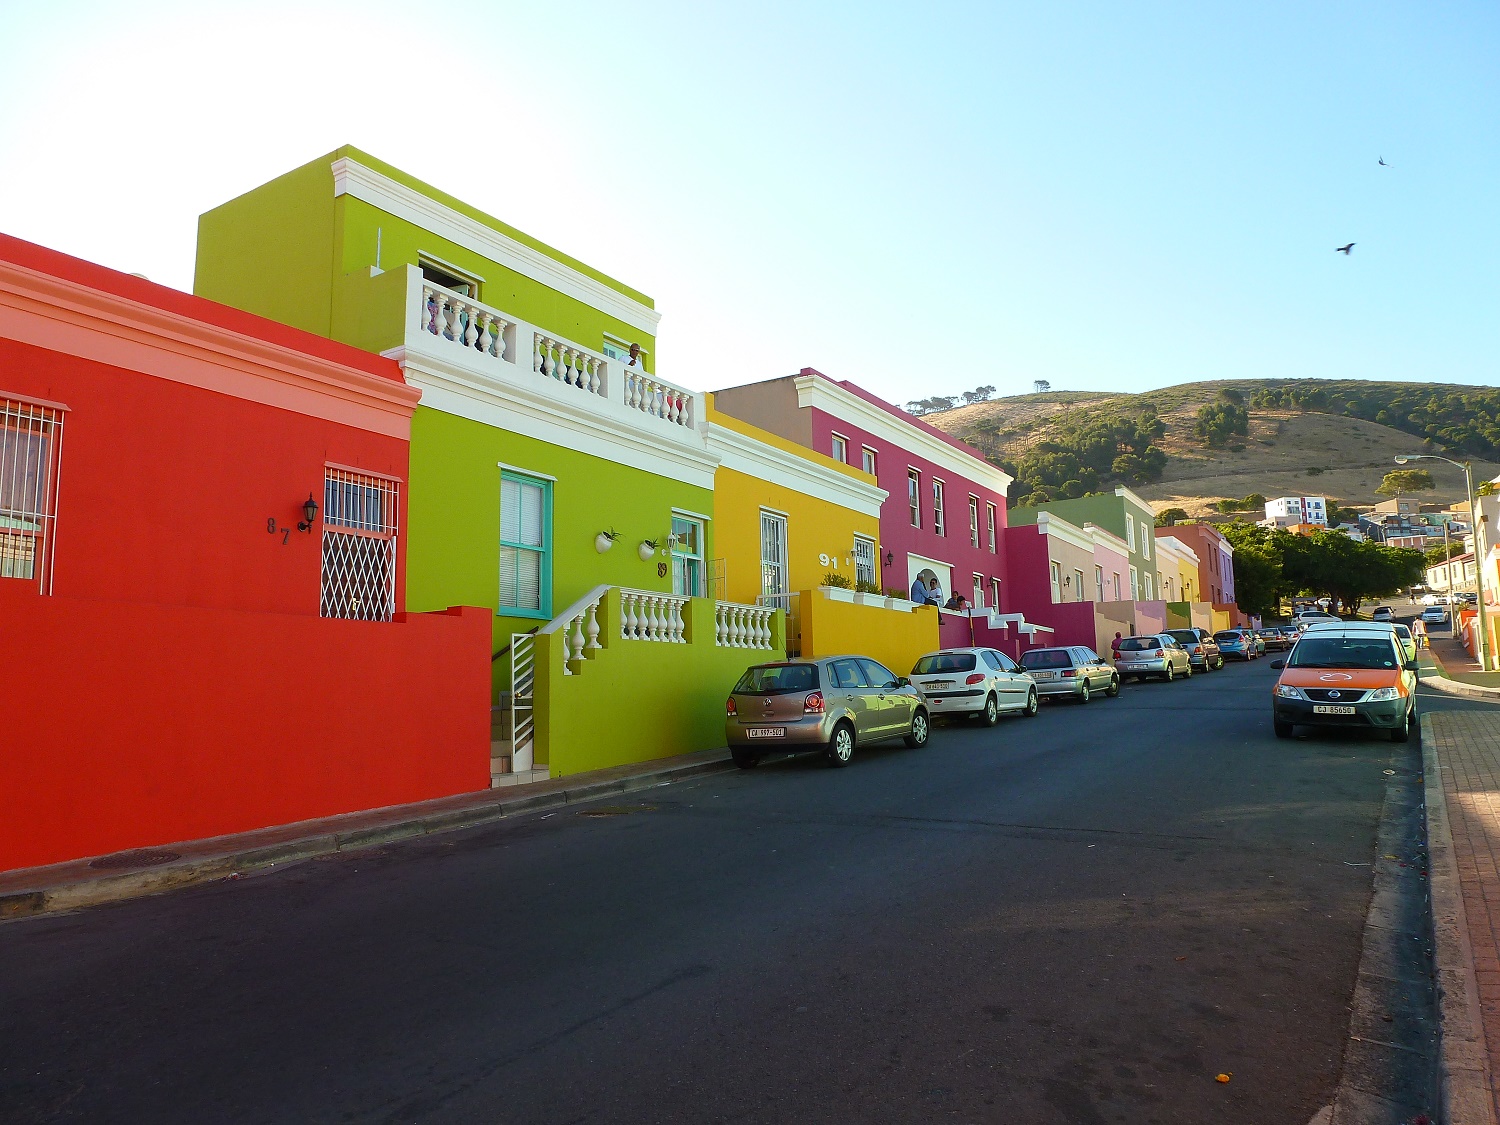 Cape Town 2